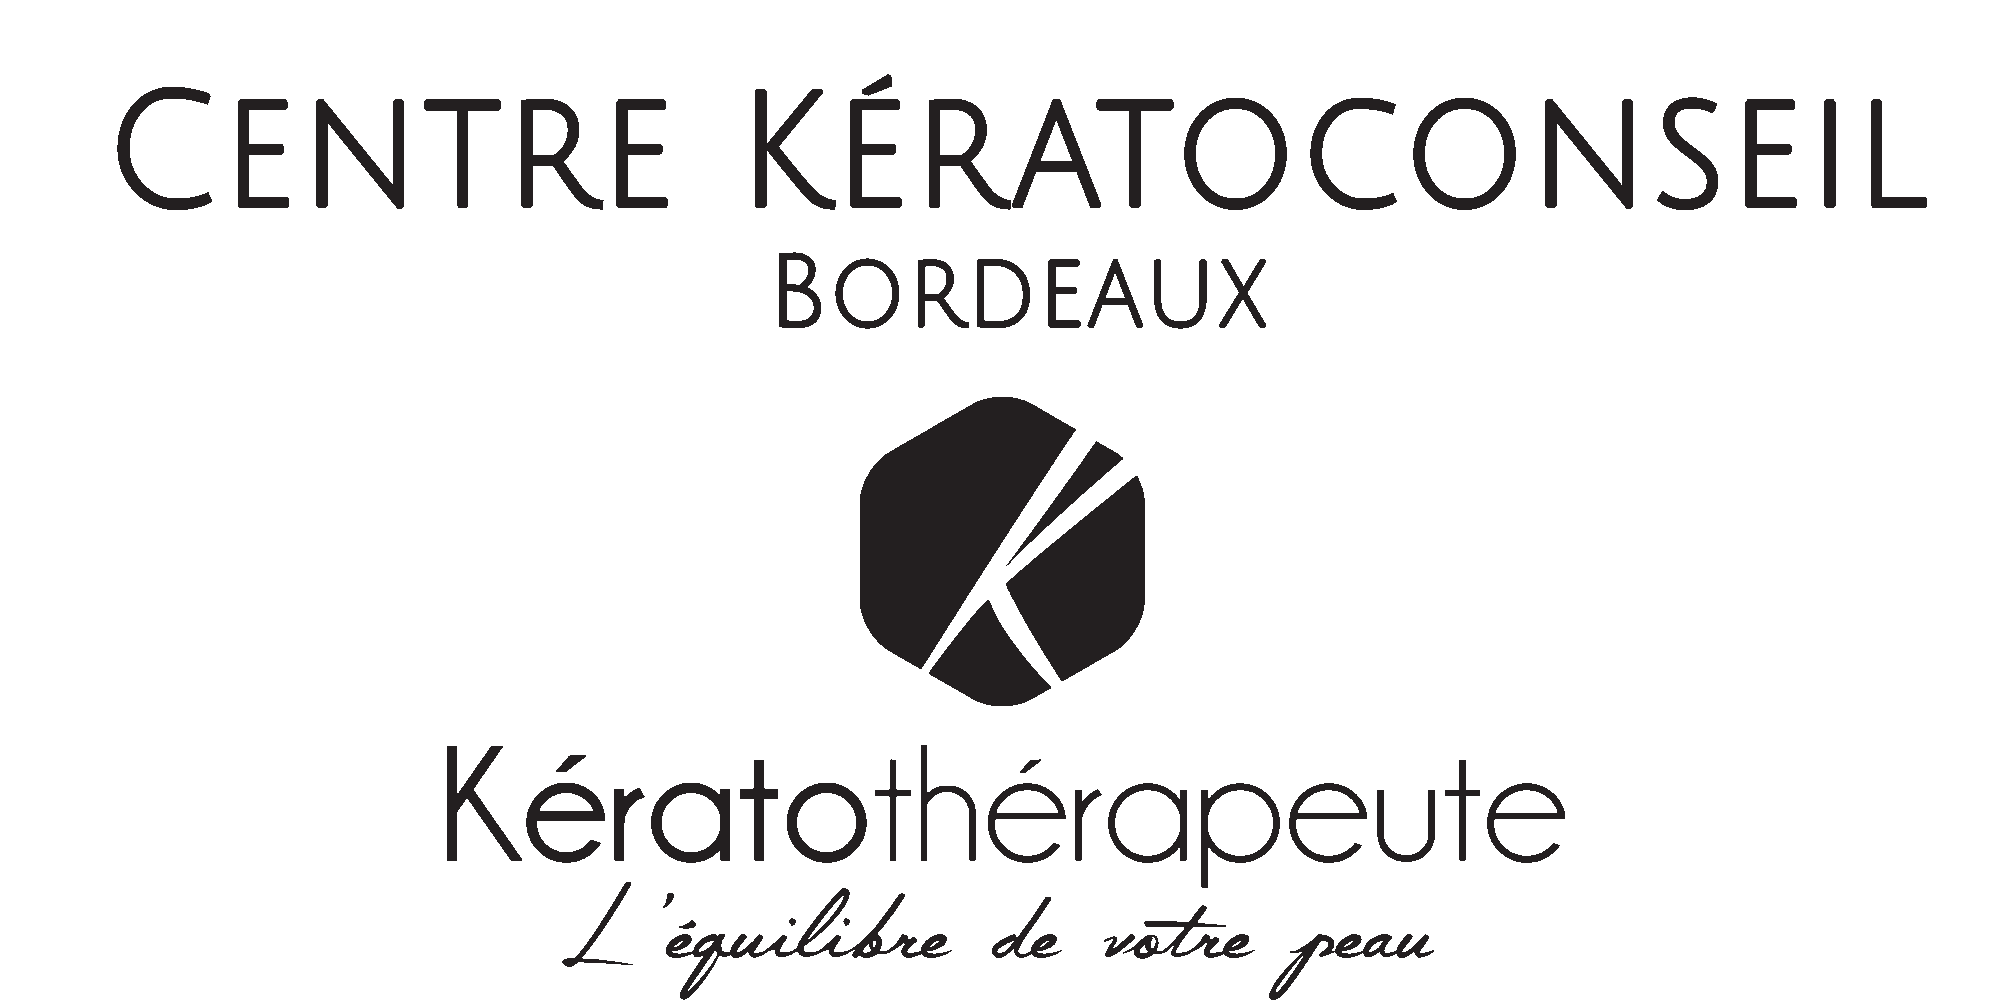 Centre kératoconseil Bordeaux kératothérapeute